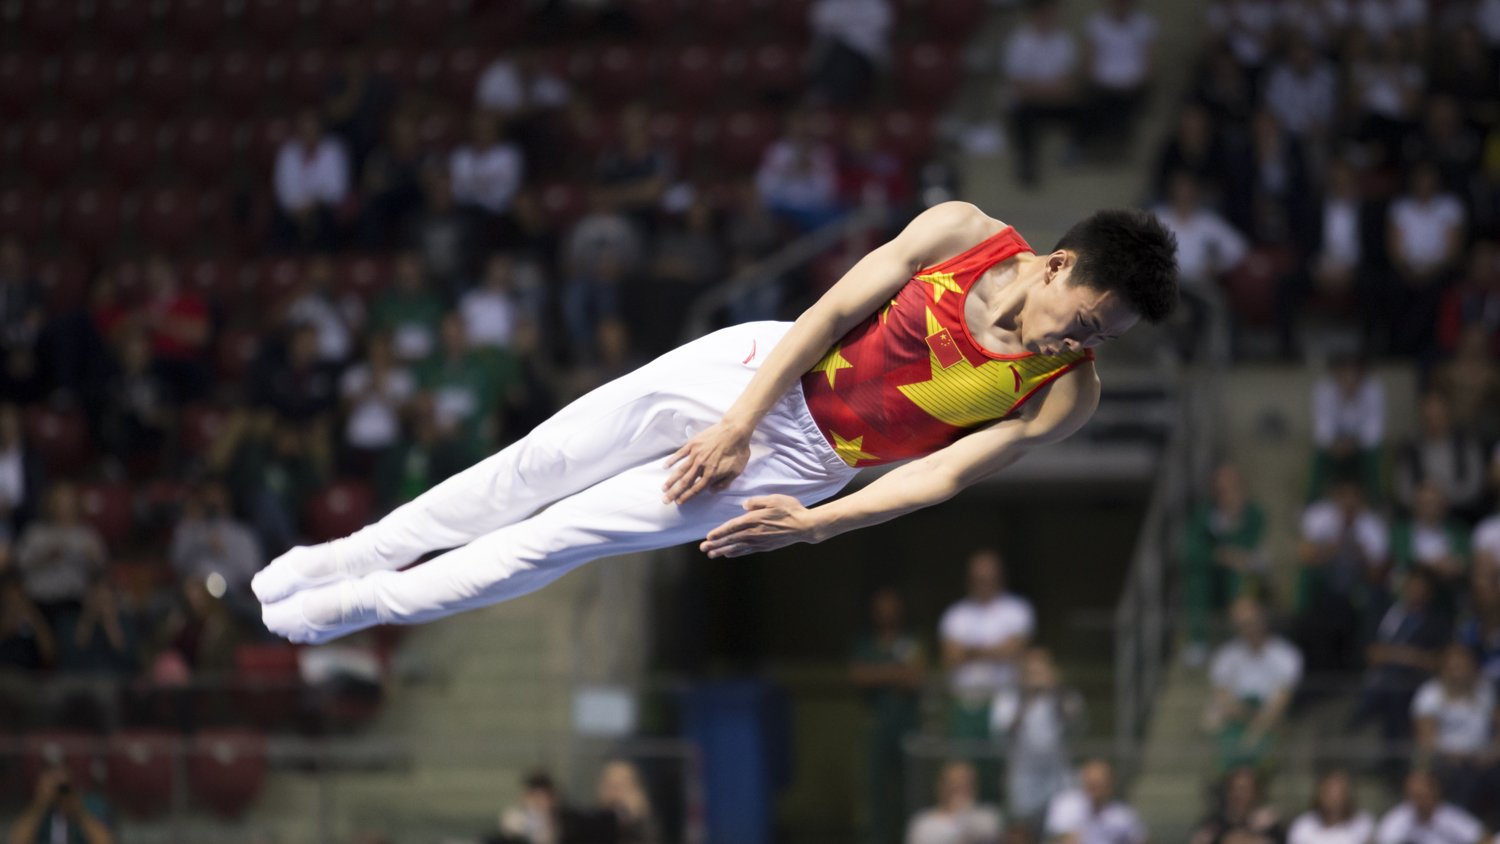 Photographie couleur du chinois Gao Lei, champion du monde de Trampoline, en train d'effectuer un salto en position tendu